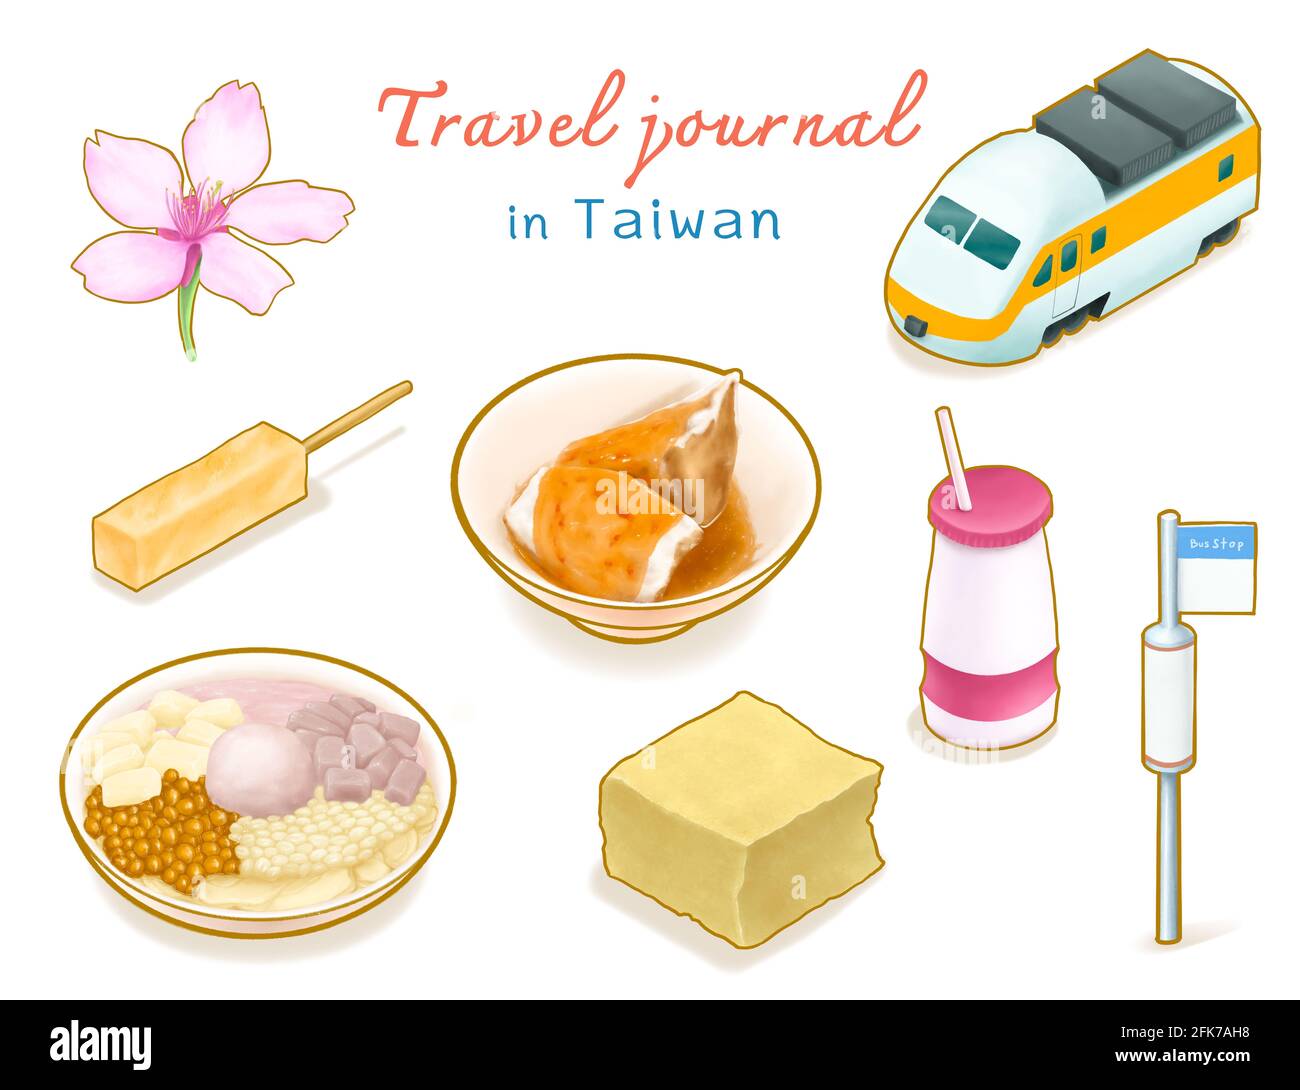 Travel Journal in Taiwan Sammlung, digitale Malerei von Sakura, Express-Zug, Bushaltestelle, Joghurt Getränk und taiwanesischen Essen isometrische Cartoon-Ikone rast Stockfoto